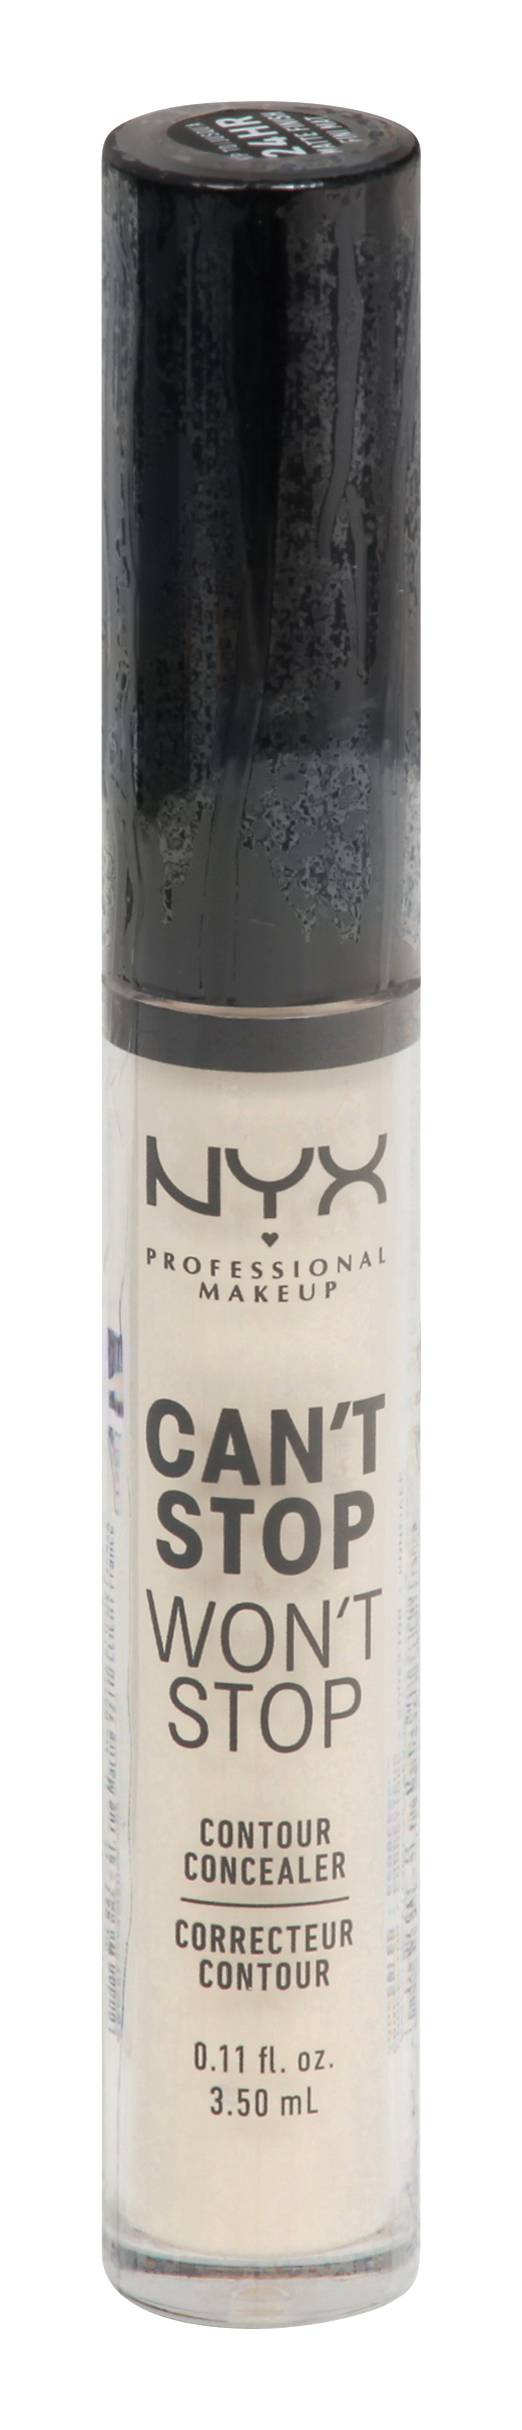 Nyx Professional Makeup Can't Stop Won't Stop Pale Cswsc01 Contour Concealer